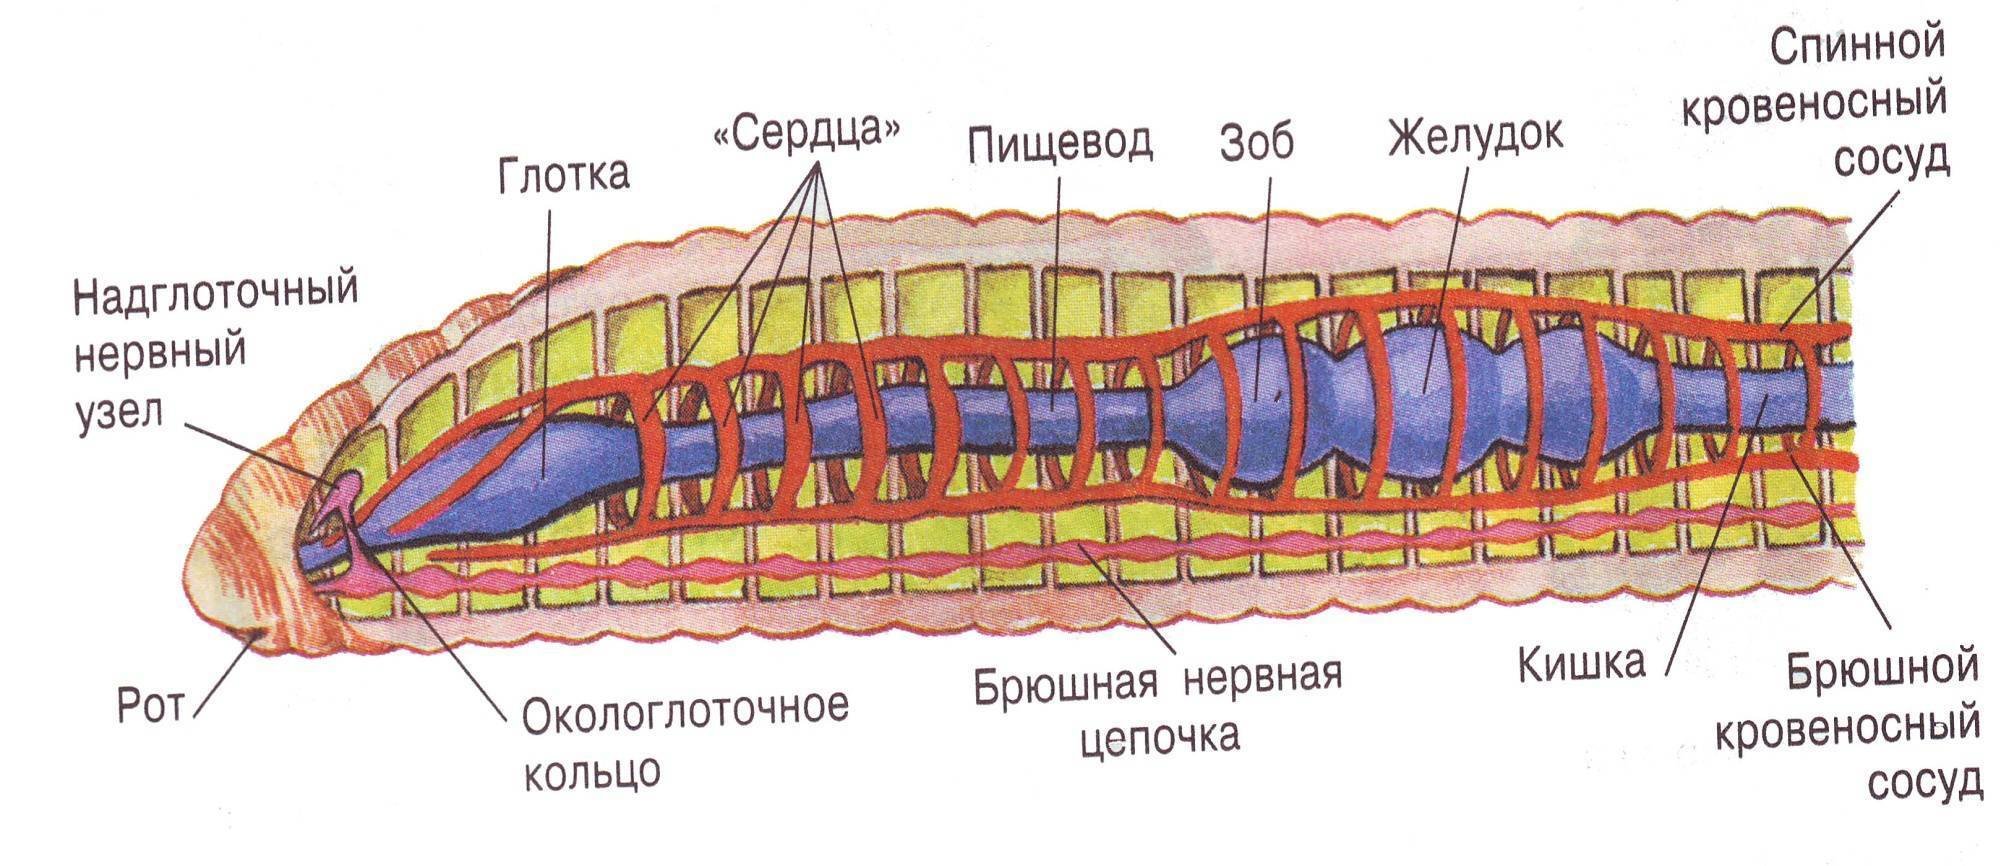 Строение и жизнедеятельность червей. Кольчатые черви внутреннее строение. Продольный разрез тела кольчатого червя. Внутреннее строение кольчатых червей. Сисистема органов кольцатых черве.